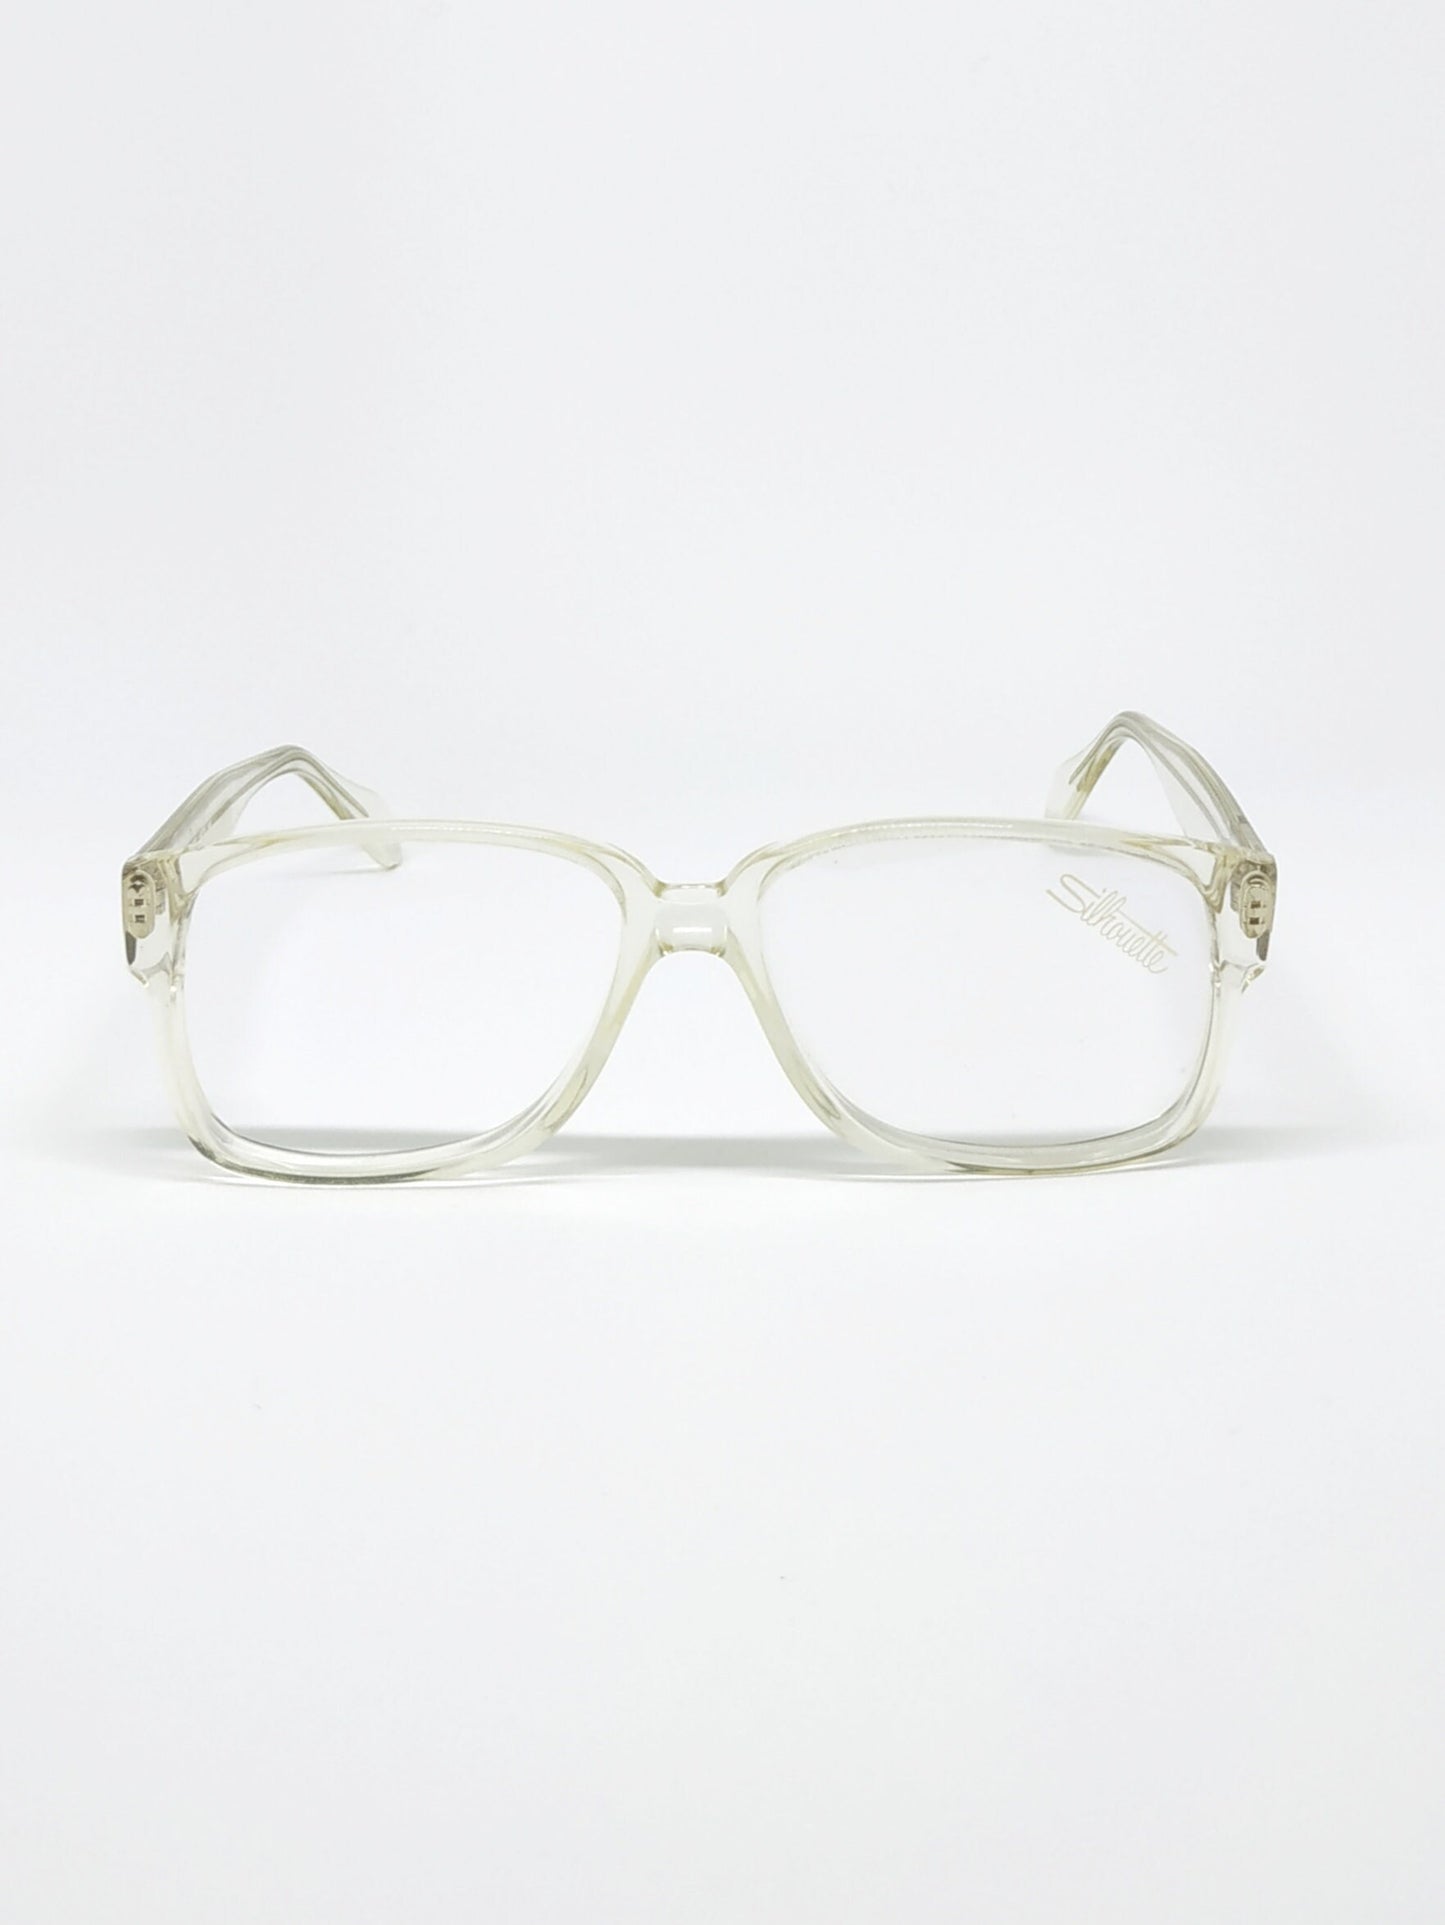 Vintage New old stock eyeglasses frames. Mod. M2067